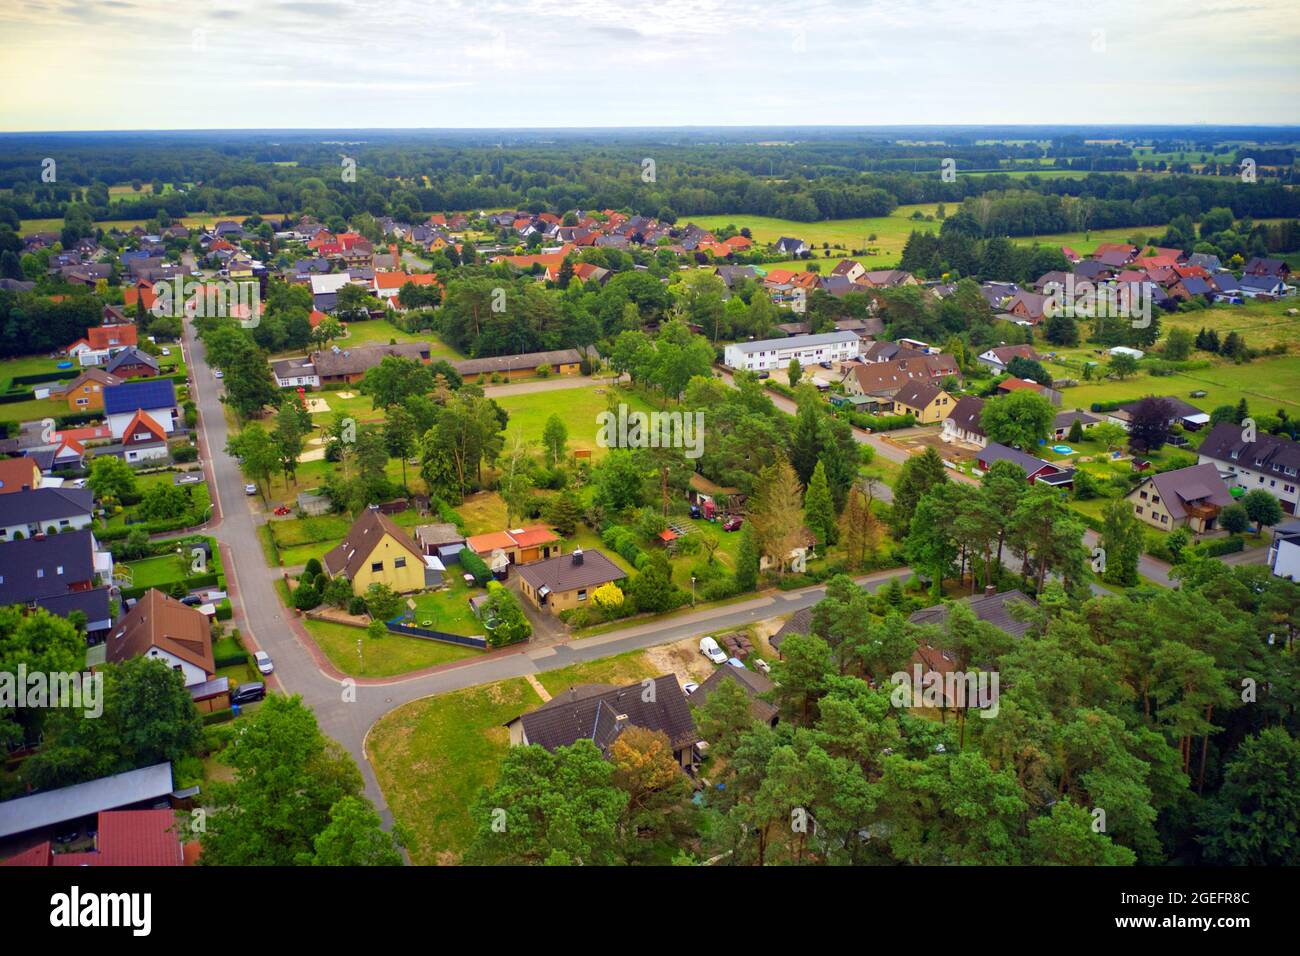 Vista aérea de un suburbio de construcción holgada en un paisaje llano del norte de Alemania Foto de stock